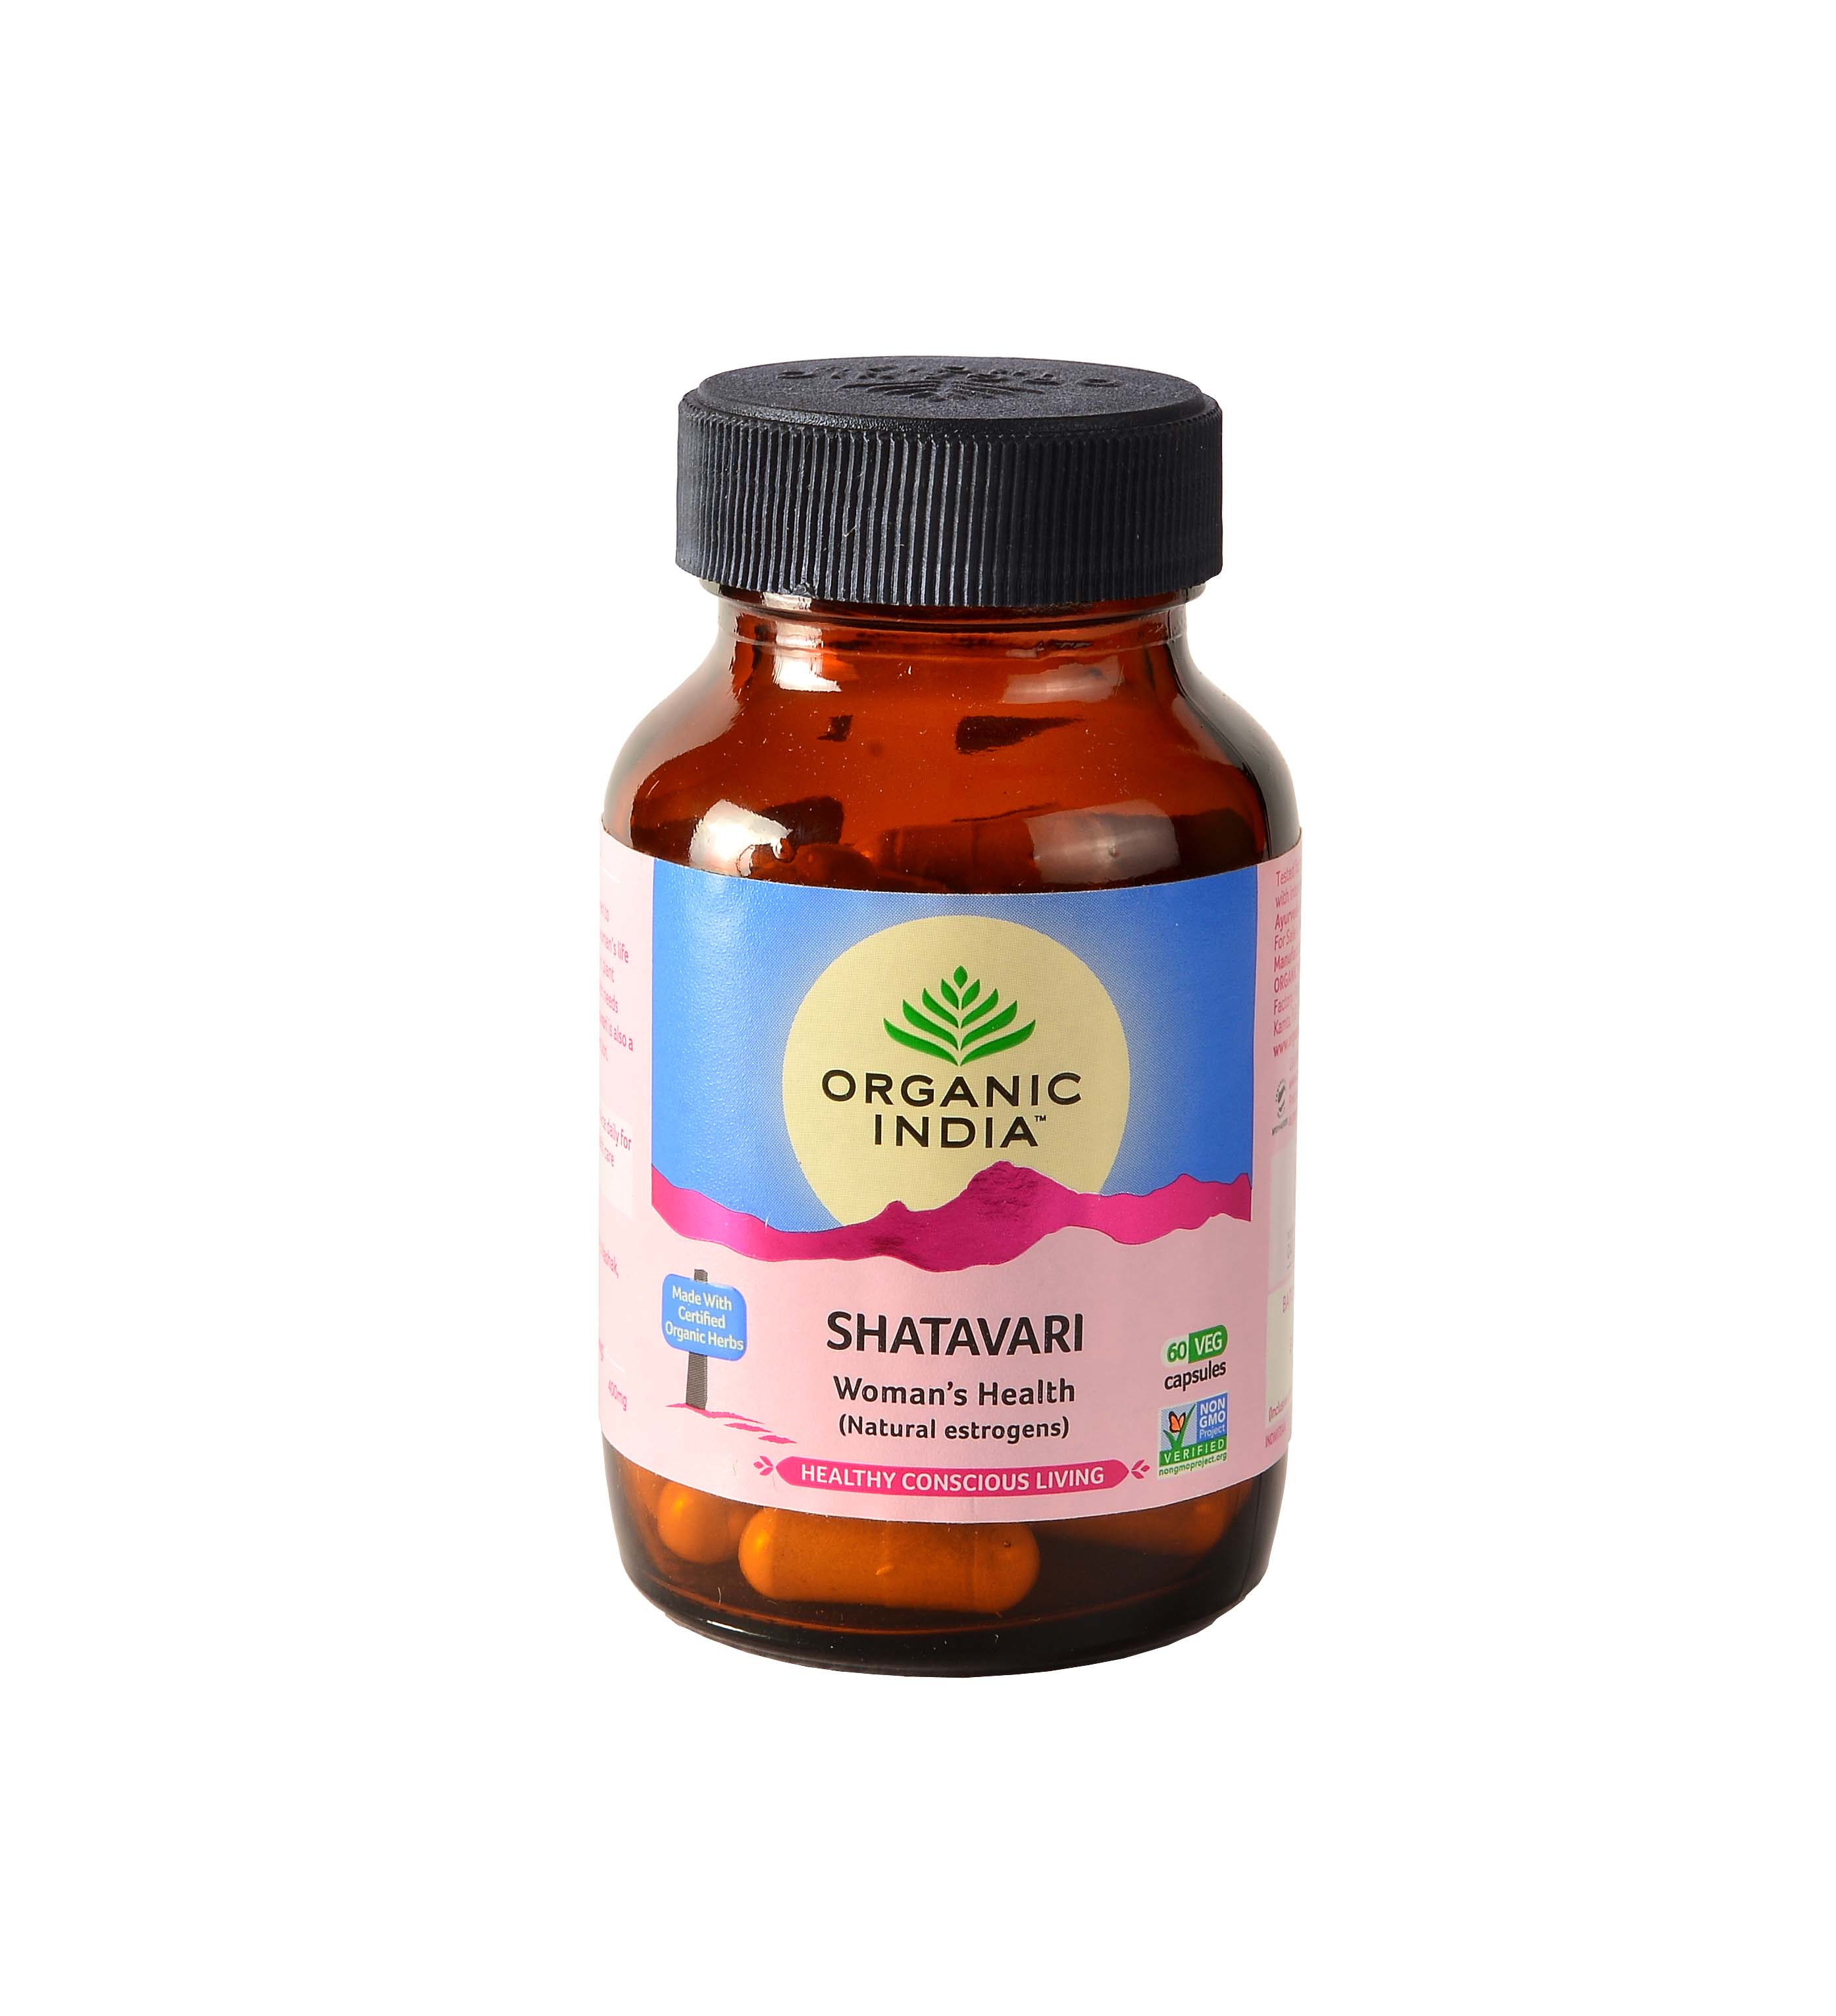 Buy Organic India Shatavari Capsule at Best Price Online